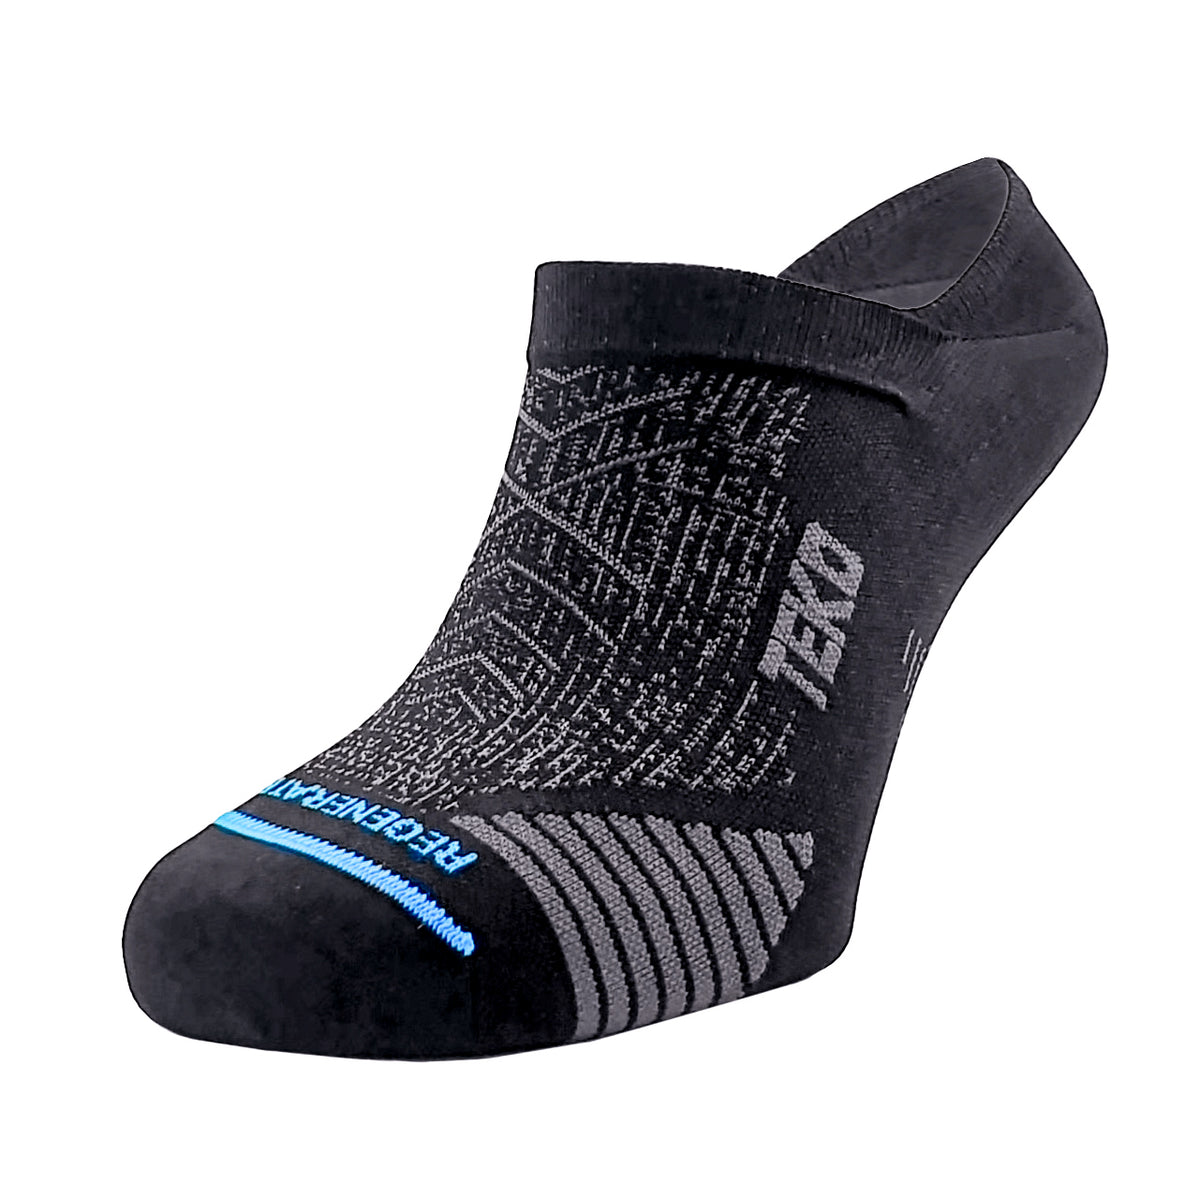 TEKO eco RUN 1.0 NO-SHOW Ultralight Running Socks - 2 PAIR PACK